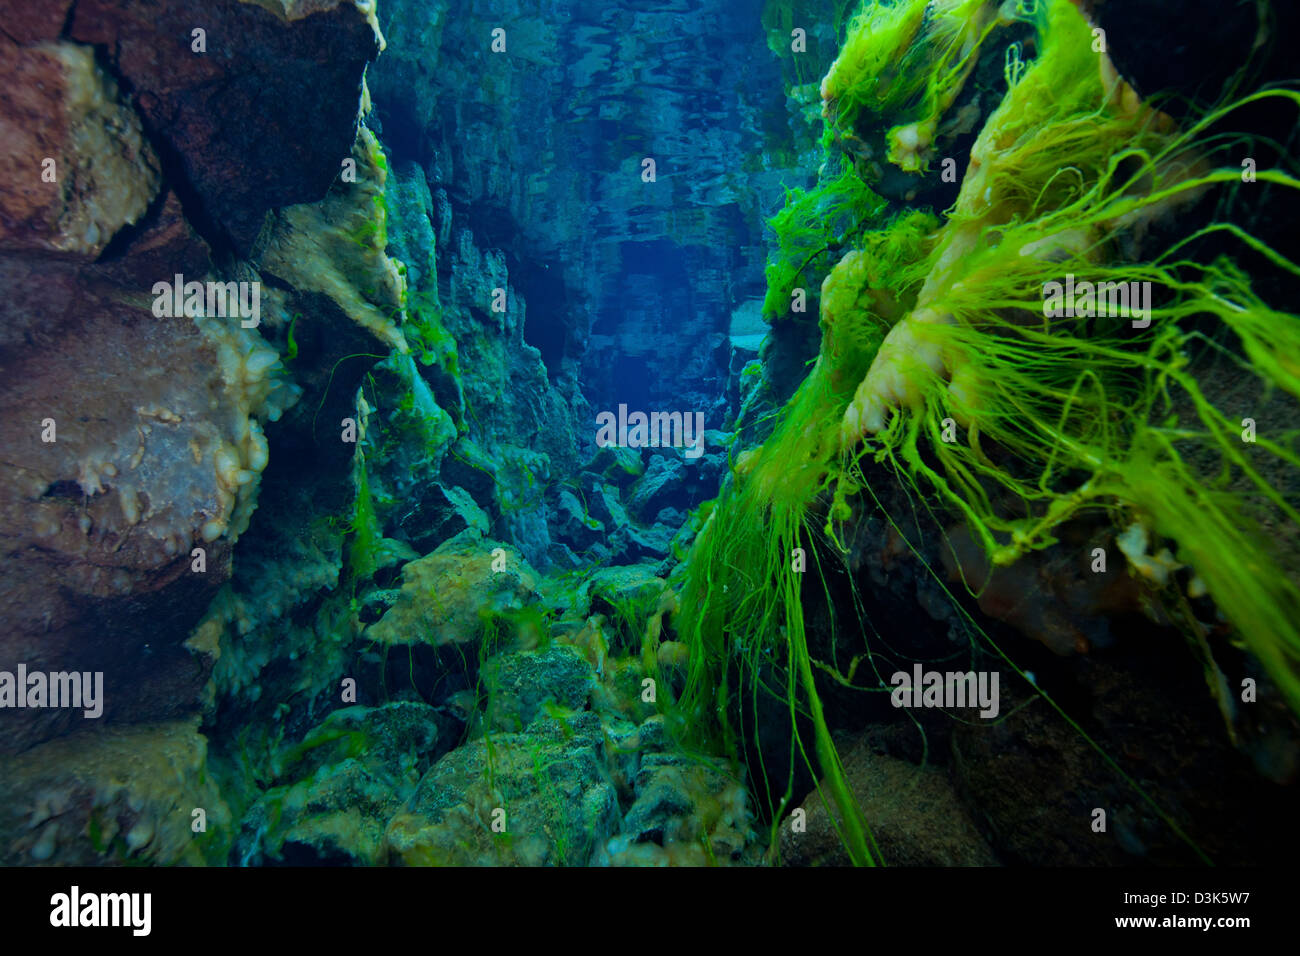 Brins d'algues vertes fluorescentes spectaculaires et des algues jaunes sur les roches volcaniques dans l'eau claire, de gin, de crack Silfra S.p.a. l'Islande. Banque D'Images